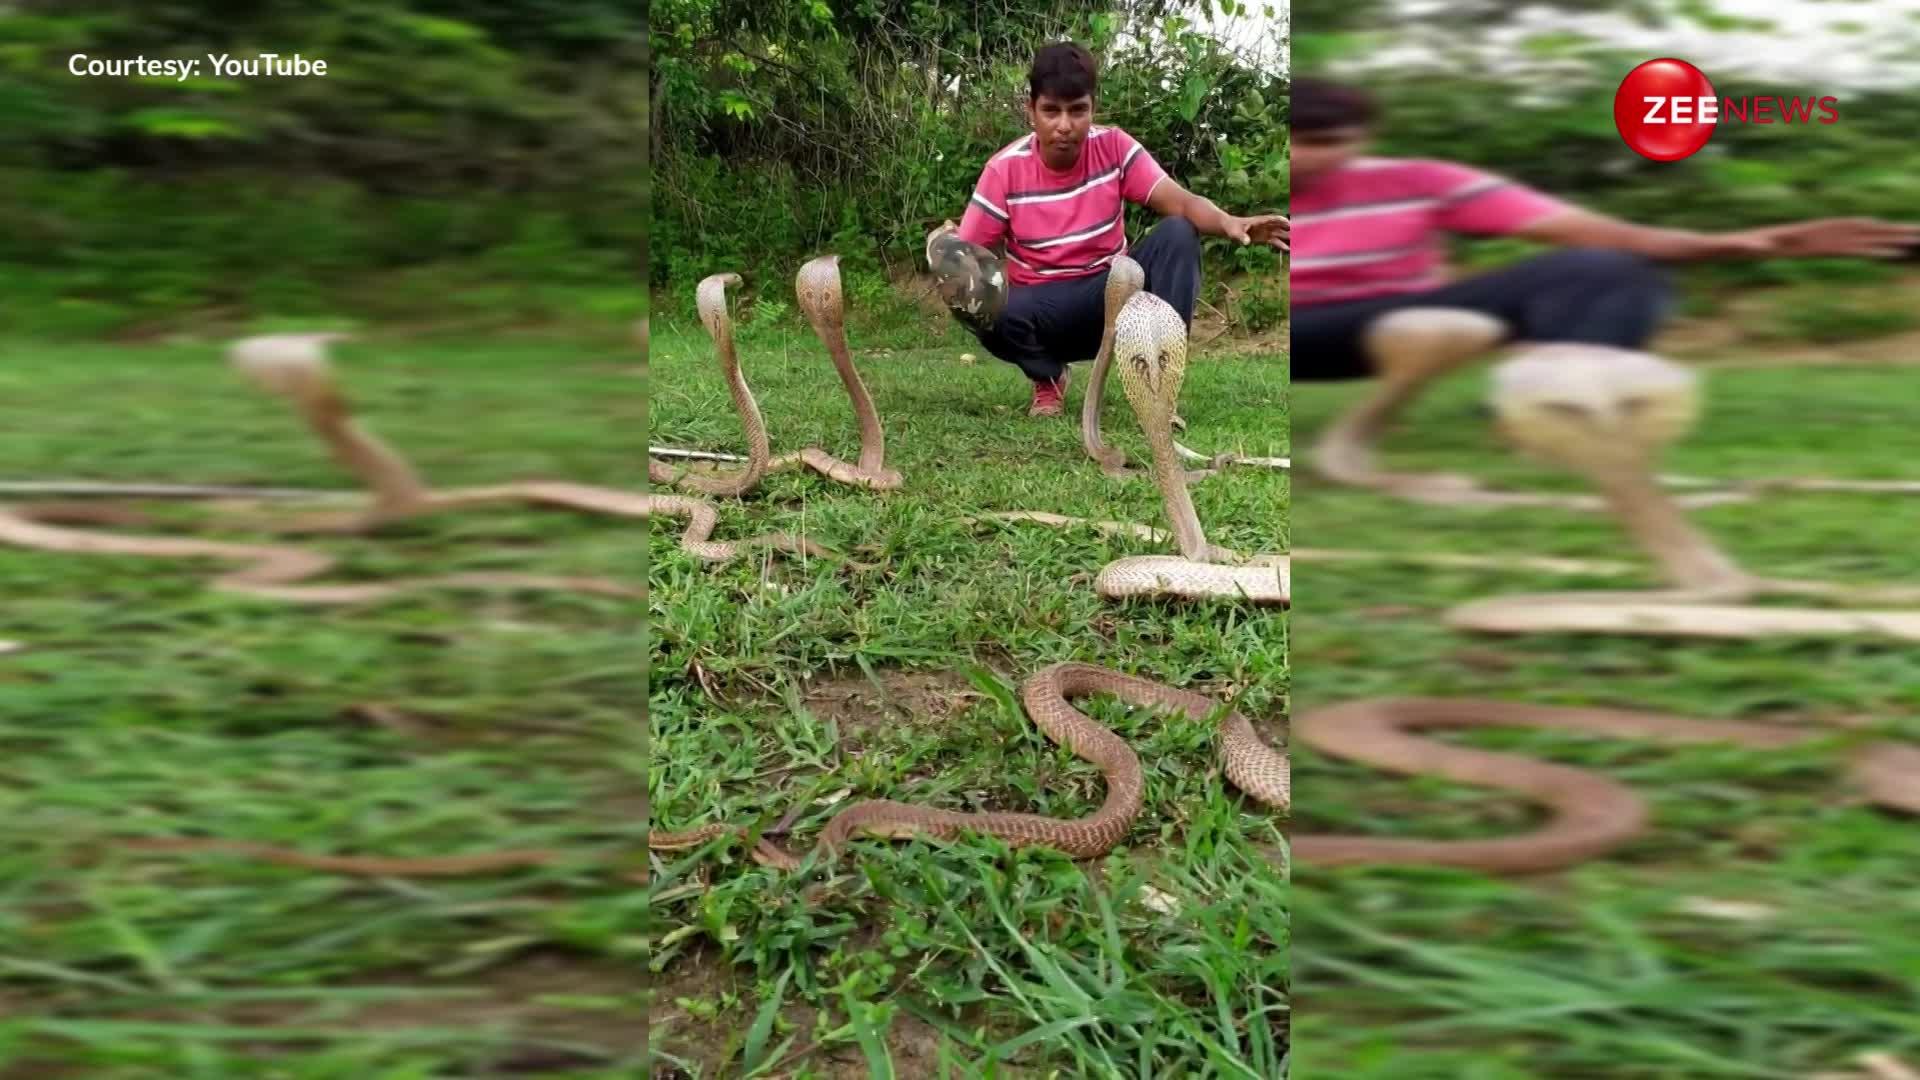 एक-दो नहीं 5-5 खतरनाक किंग कोबरा के बीच फंस गया आदमी, मुश्किल से बची जान, देखें वीडियो